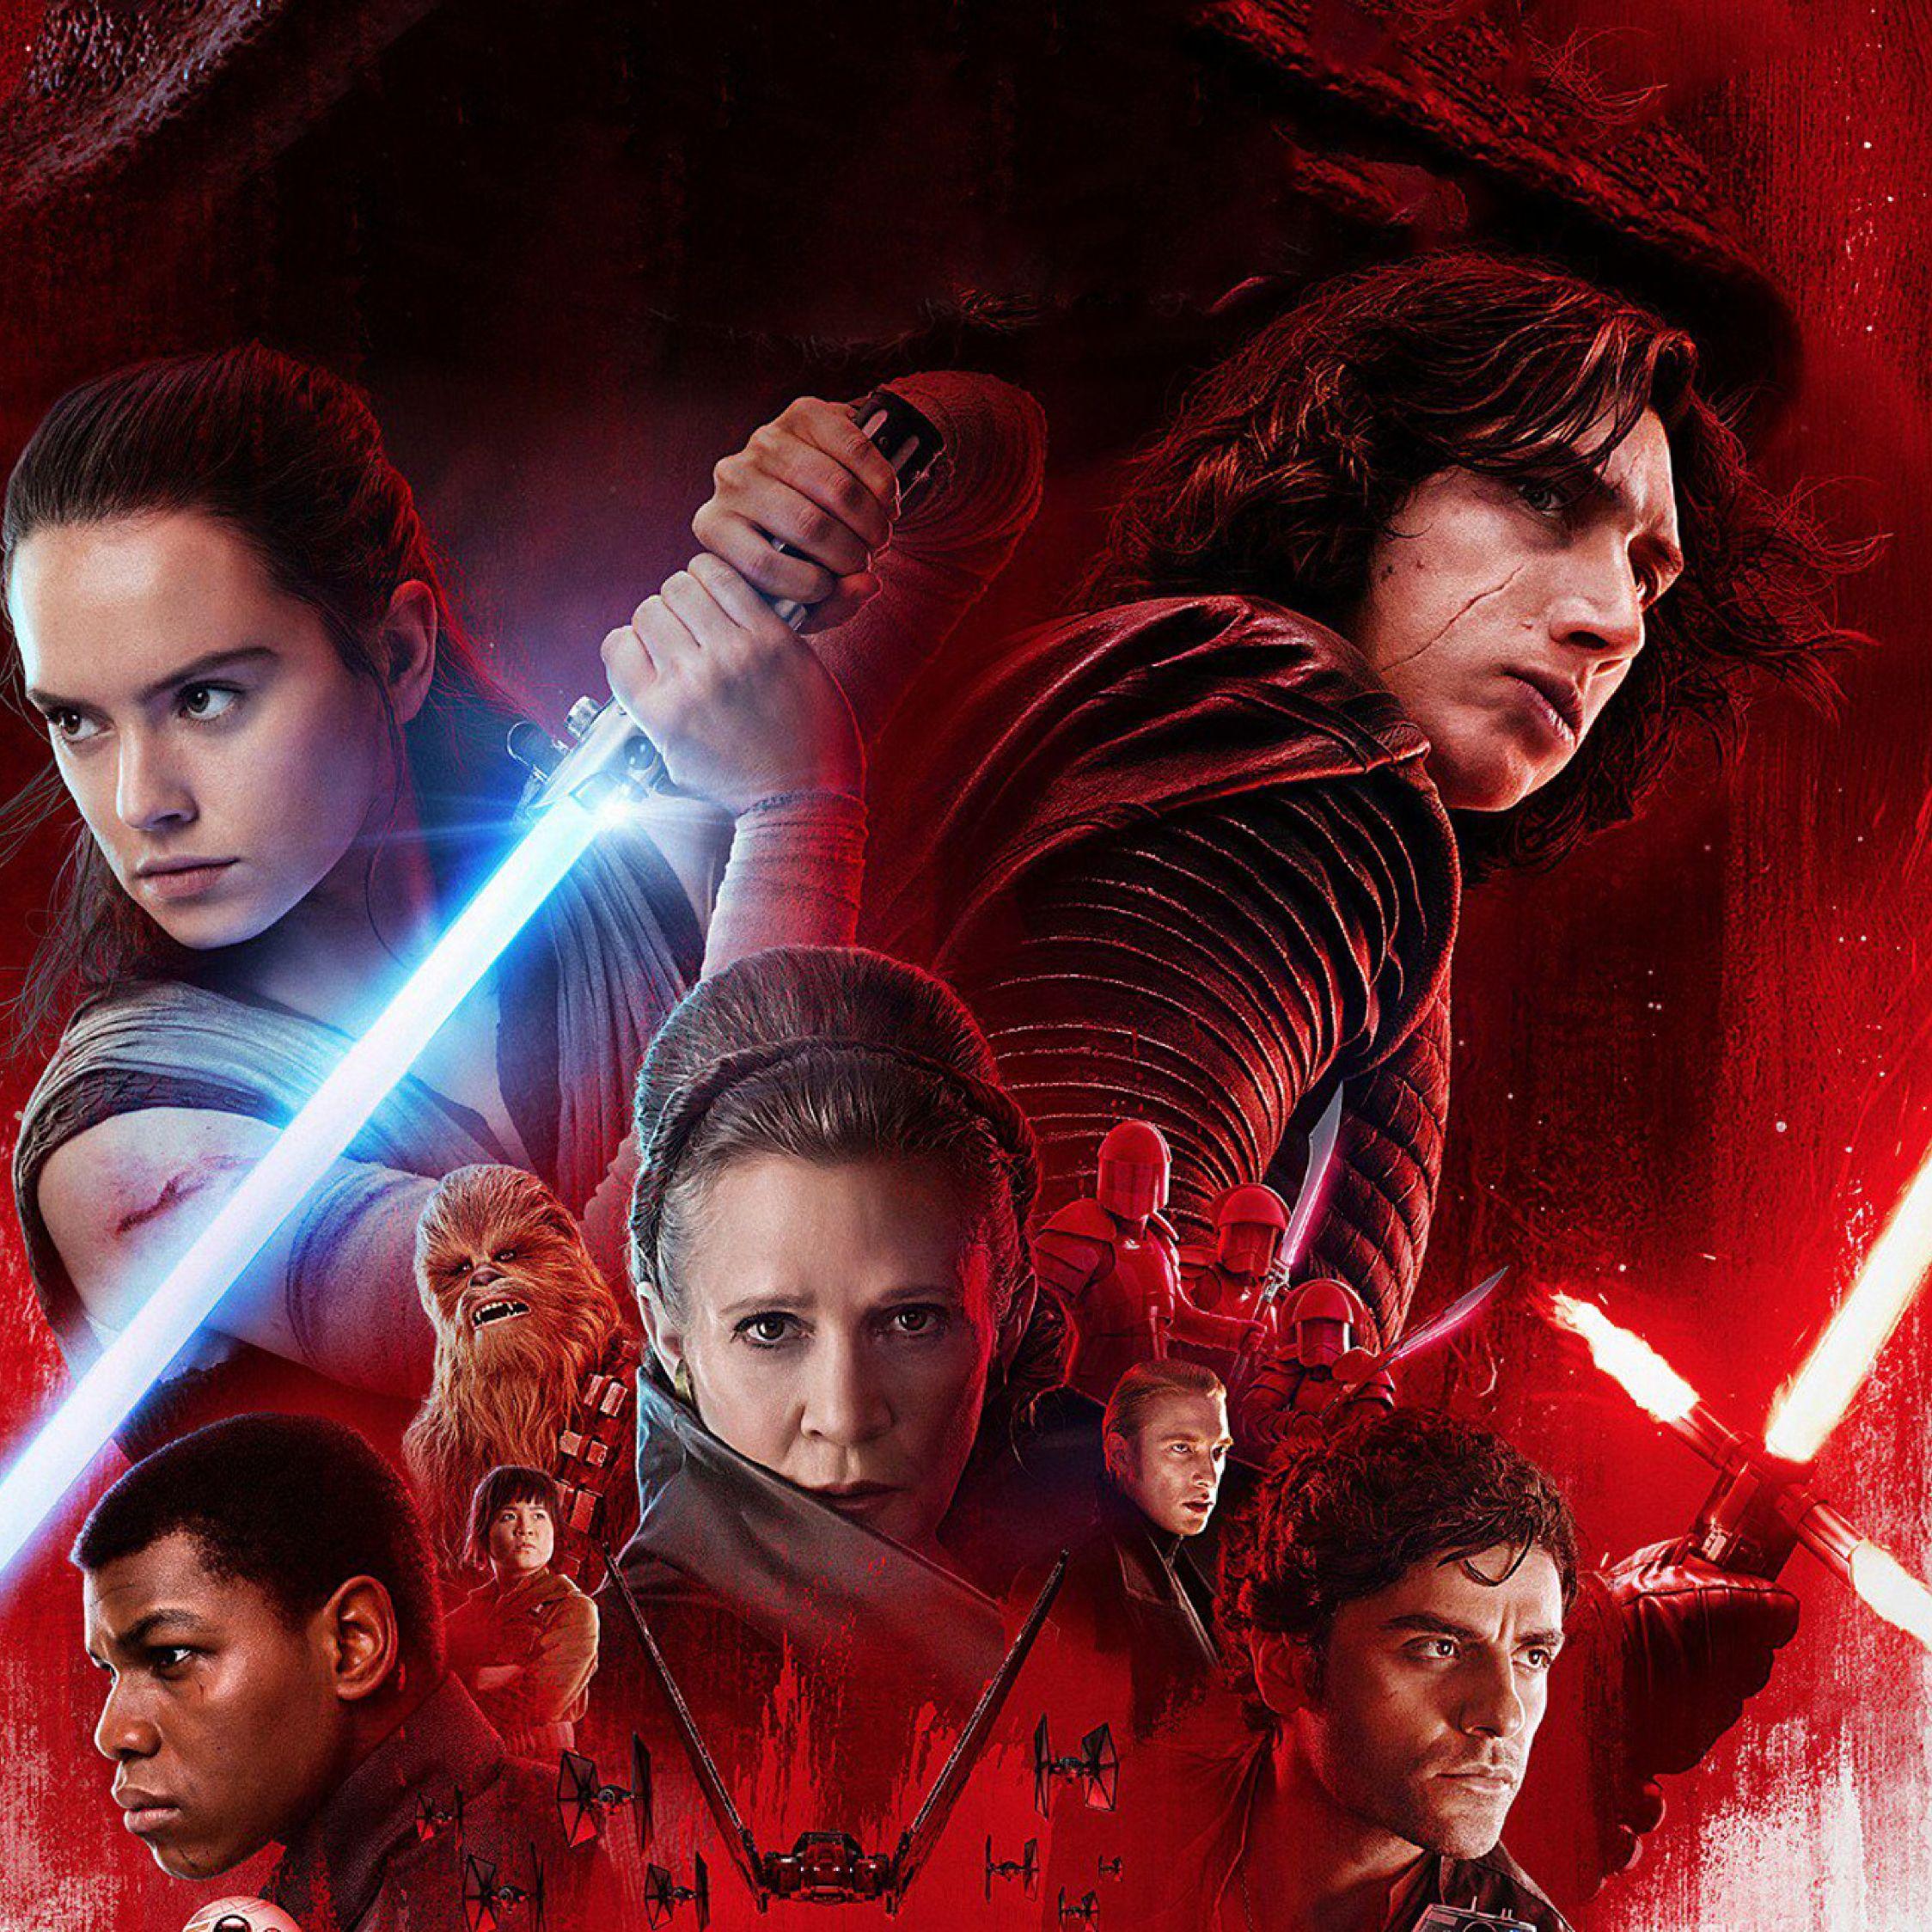 Star Wars The Last Jedi Poster, Full HD Wallpaper